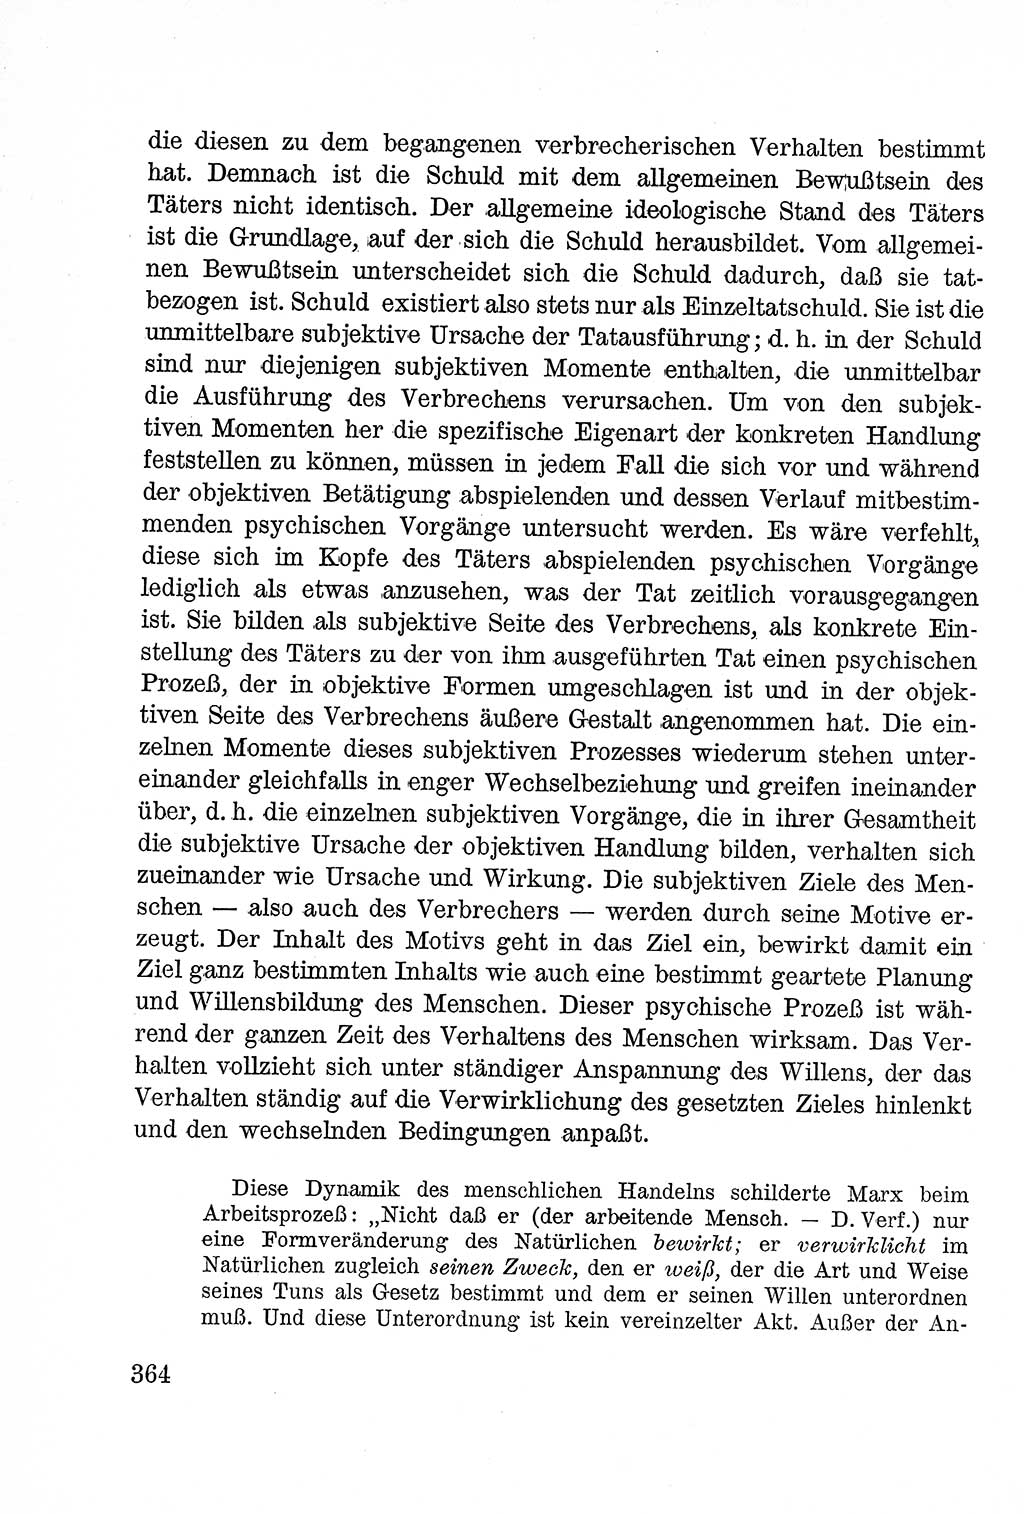 Lehrbuch des Strafrechts der Deutschen Demokratischen Republik (DDR), Allgemeiner Teil 1957, Seite 364 (Lb. Strafr. DDR AT 1957, S. 364)